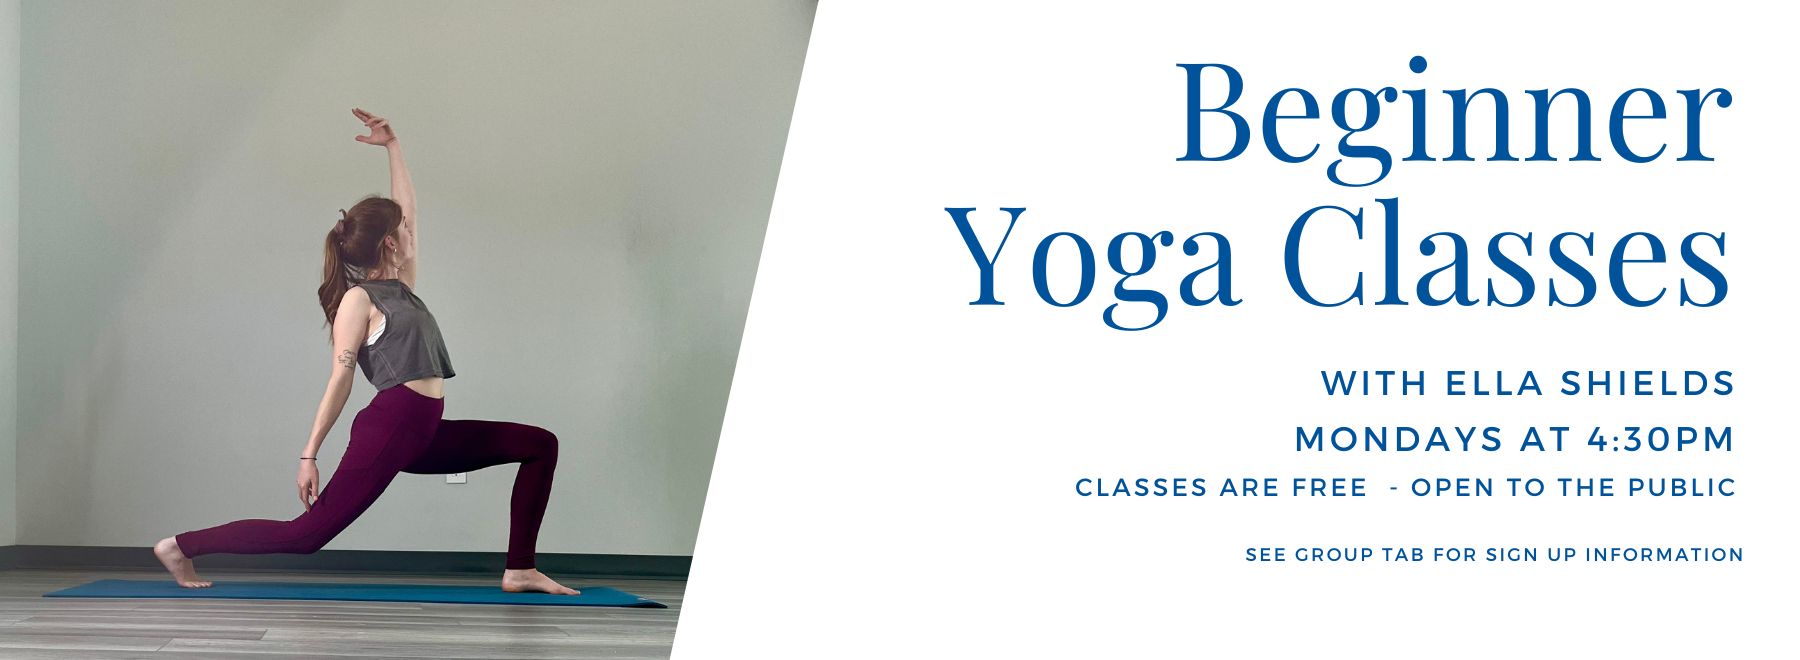 woman performing yoga pose - Beginner Yoga Classes, Mondays at 4:30pm